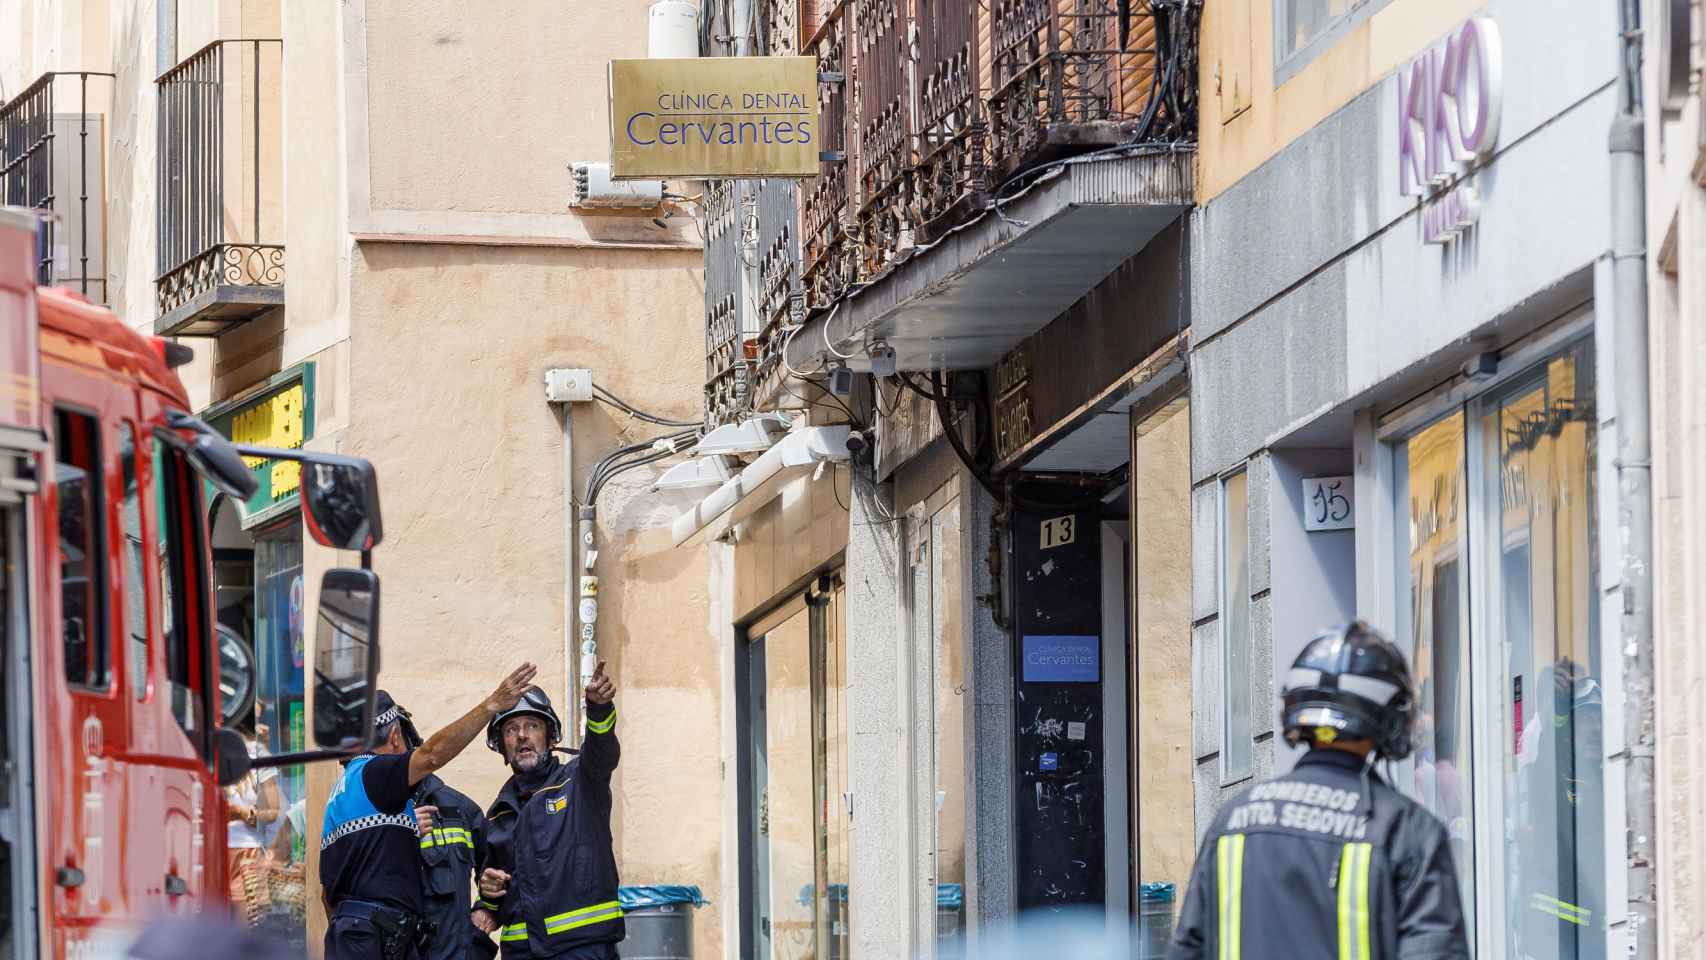 Un cortocircuito provoca un incendio en una céntrica calle de Segovia